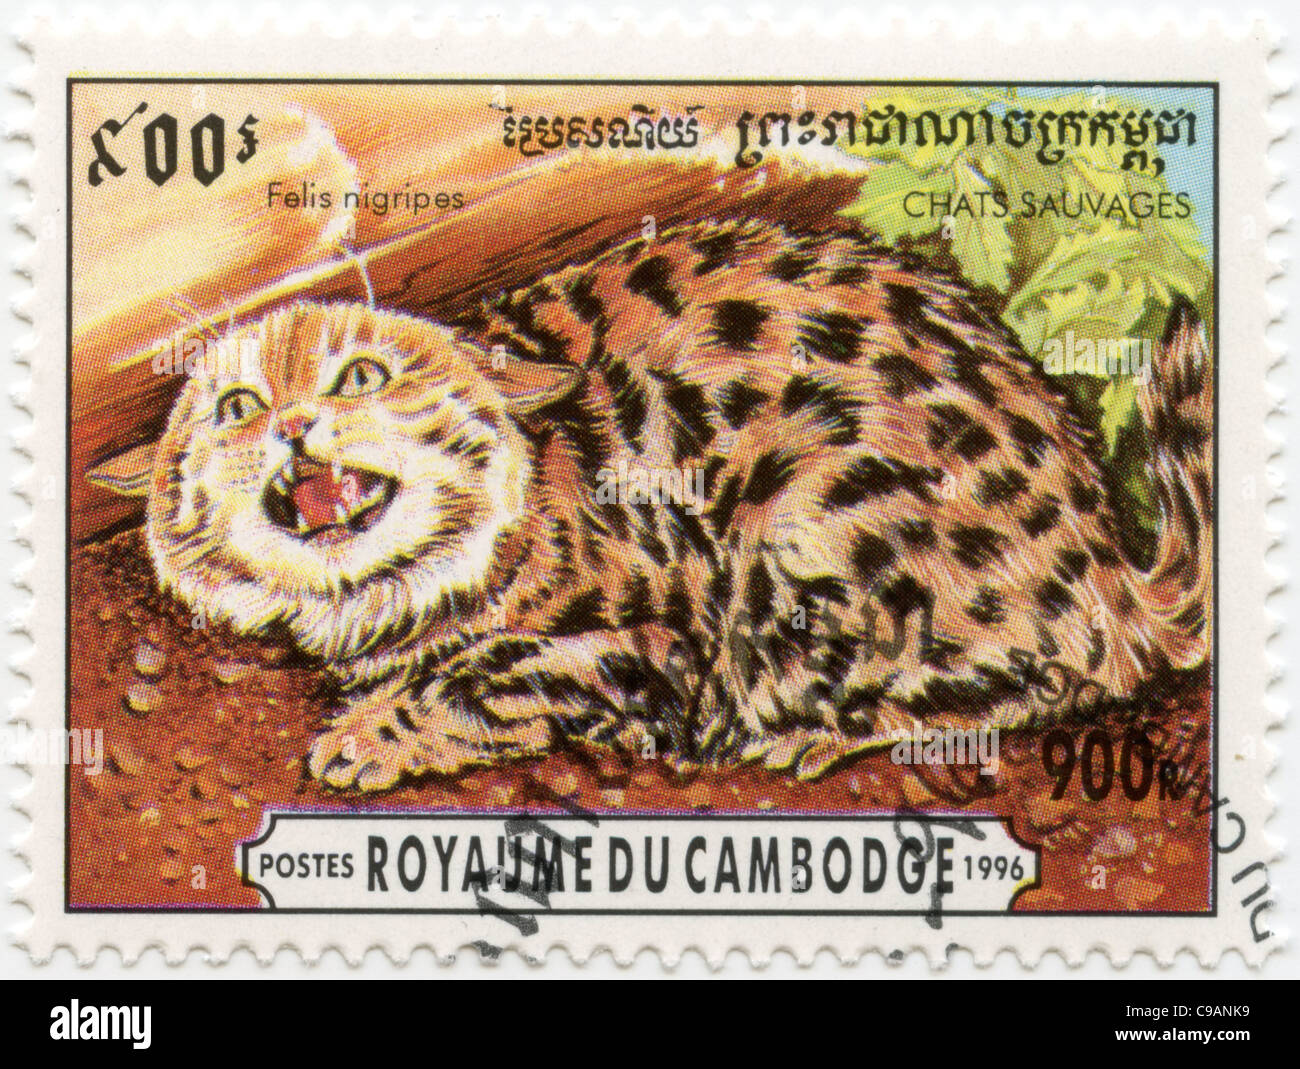 Cambodge - timbre le chat à pieds noirs - Felis nigripes Banque D'Images